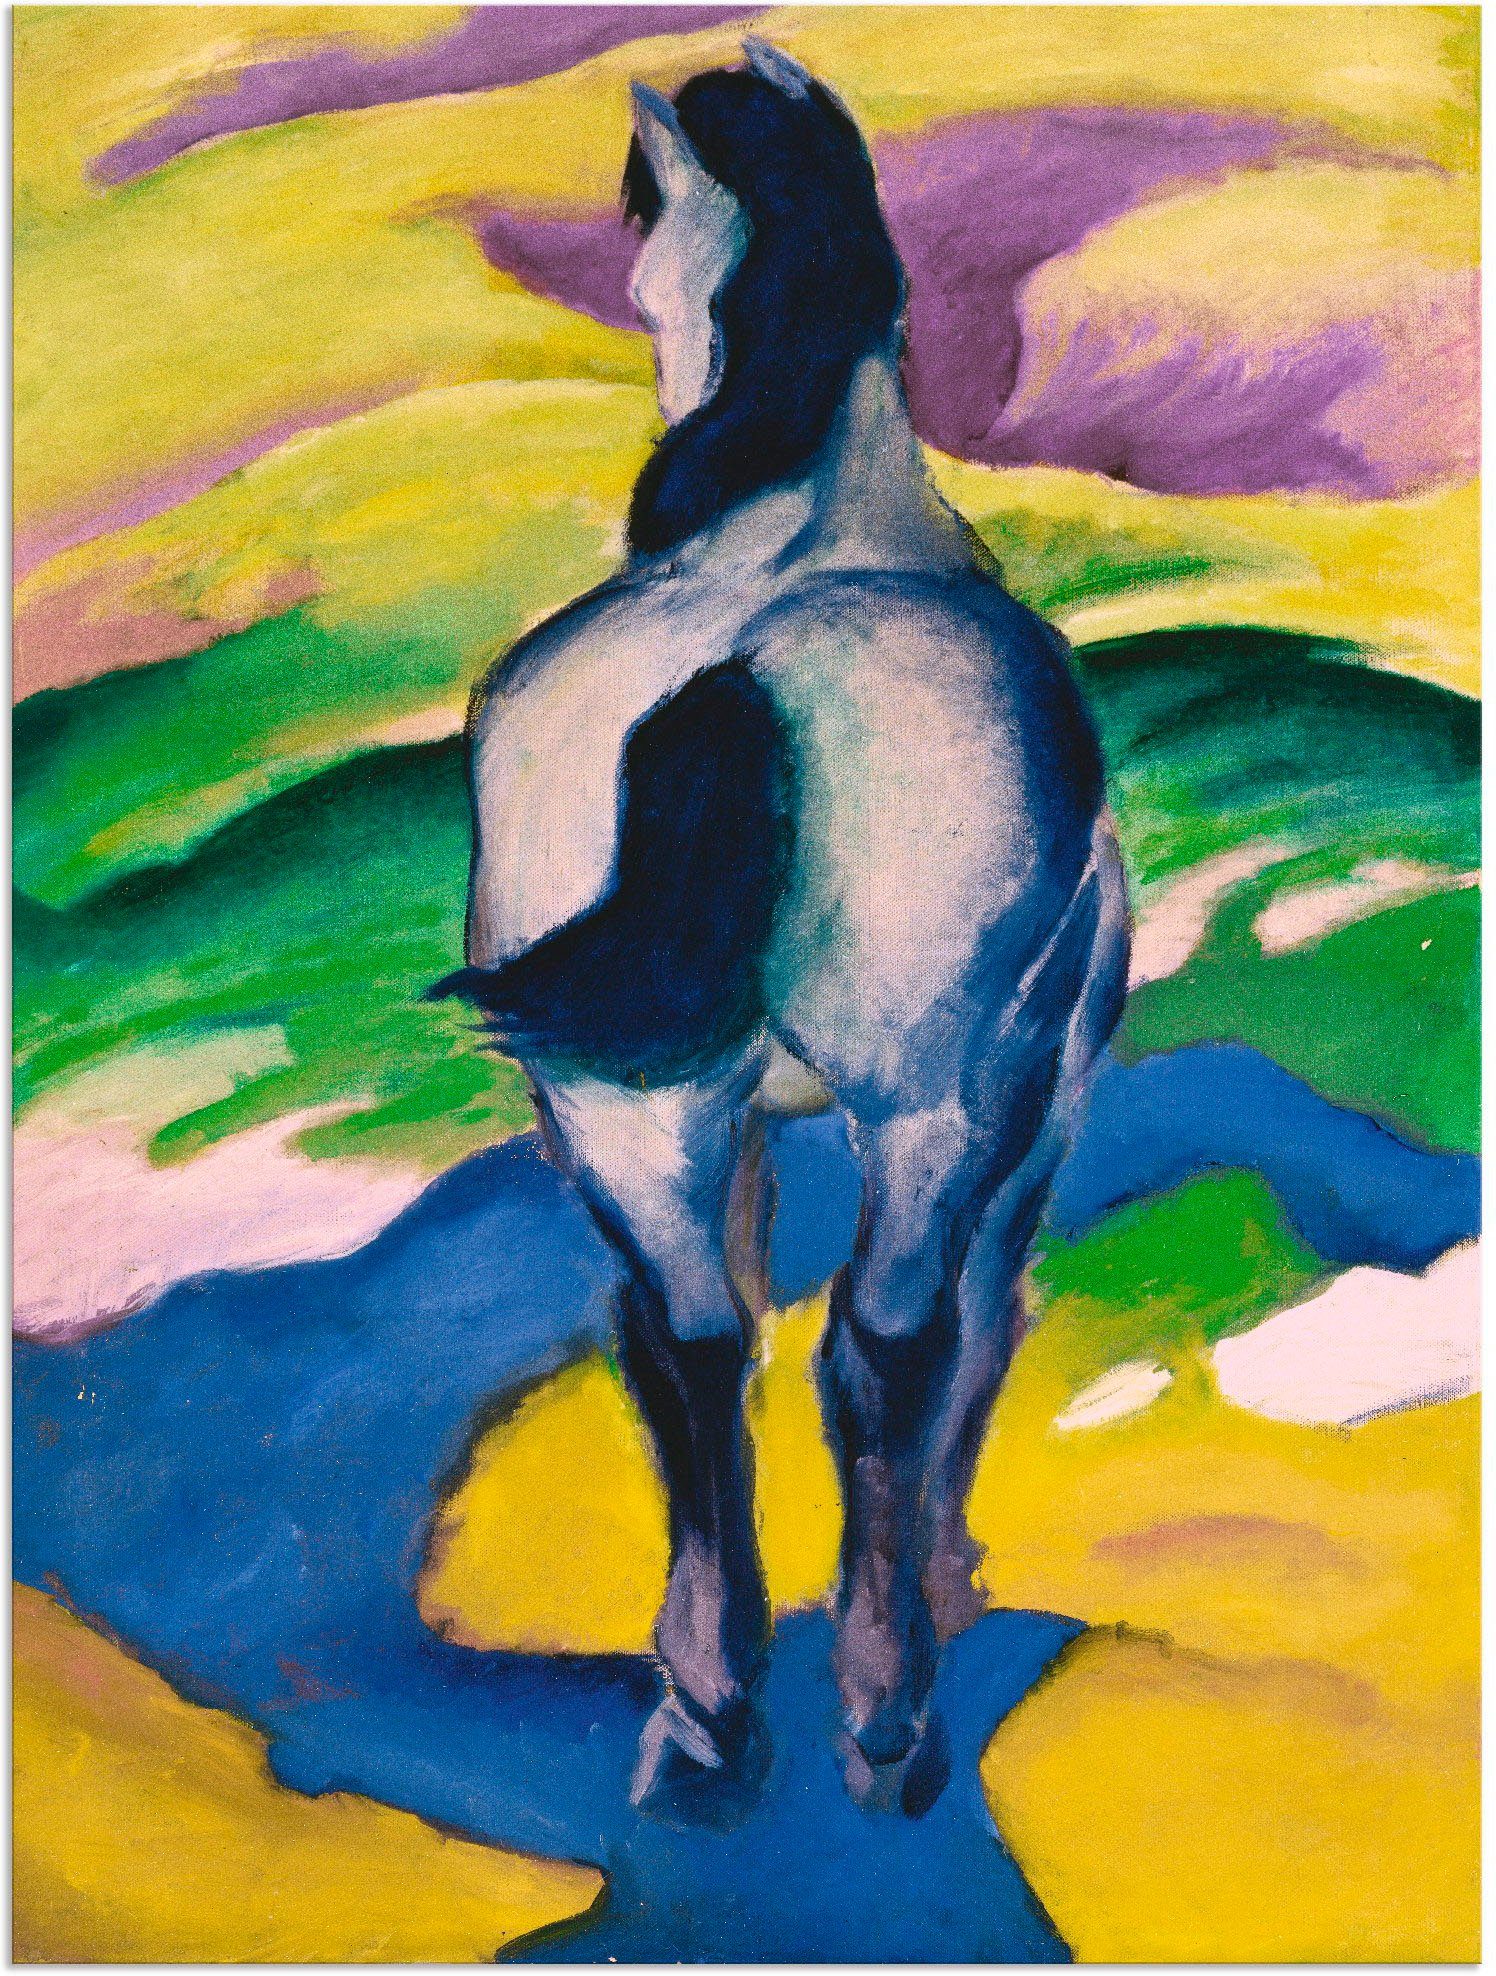 Artland Artprint Blauw paard II. 1911 in vele afmetingen & productsoorten - artprint van aluminium / artprint voor buiten, artprint op linnen, poster, muursticker / wandfolie ook g